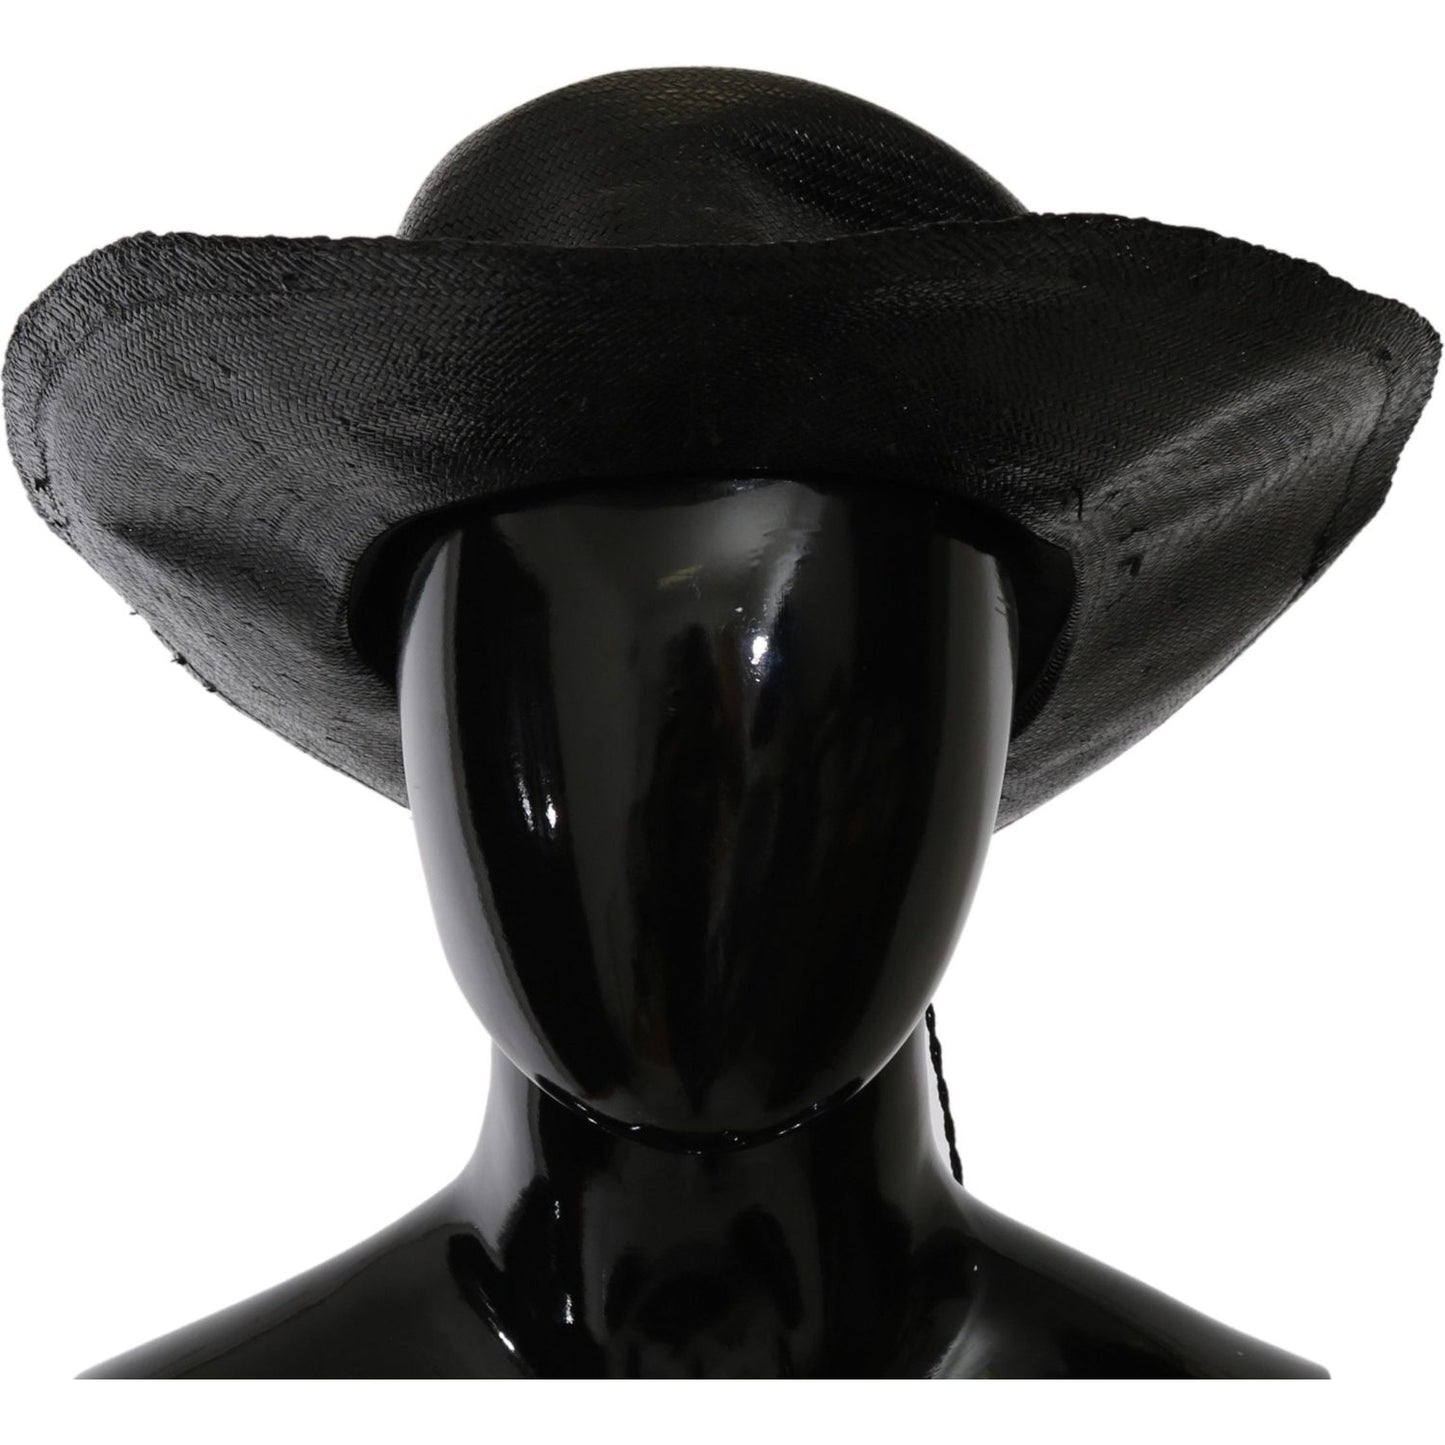 Costume National Chic Black Floppy Hat - Timeless Elegance black-wide-brim-cowboy-solid-hat Hat IMG_0919-c5f0d5d2-97c.jpg